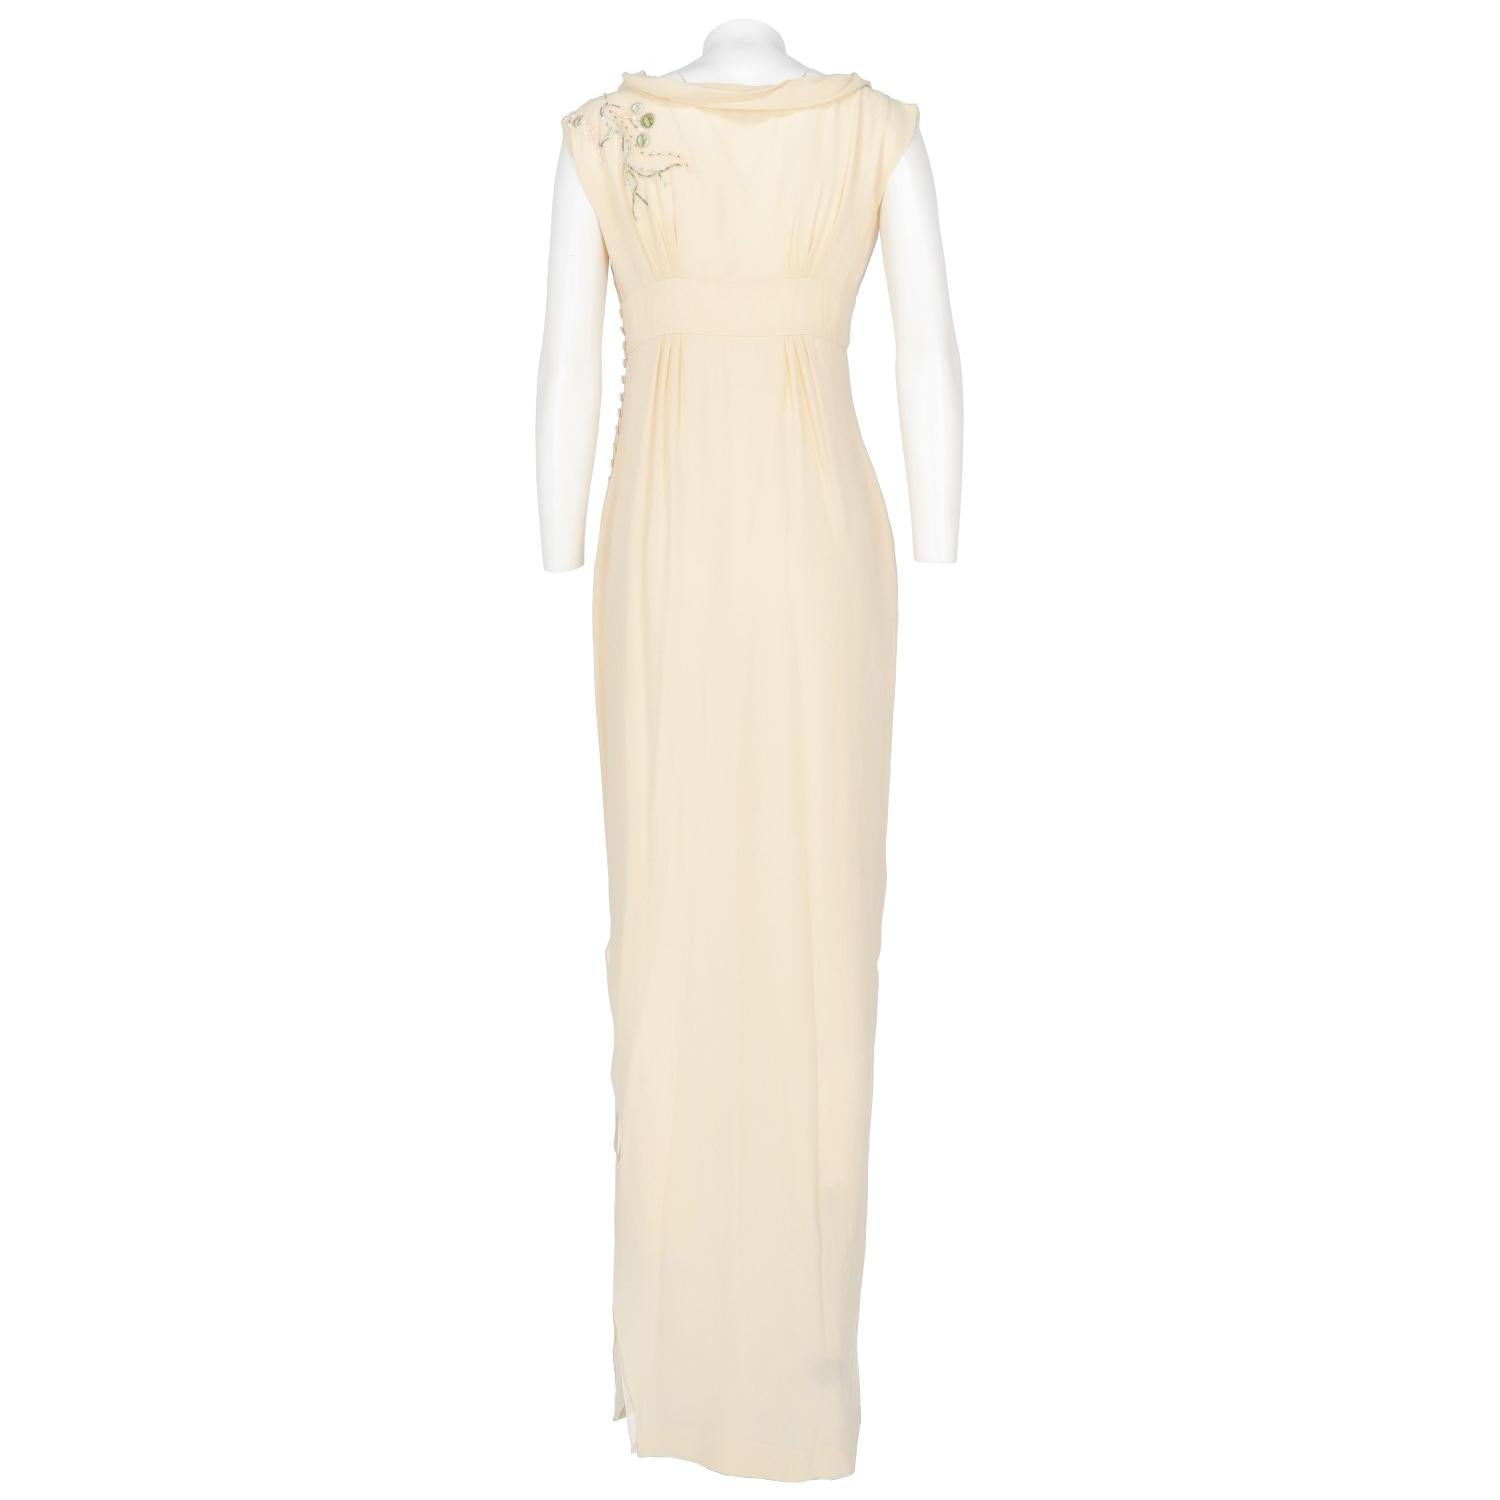 White 2000s John Galliano Silk Wedding Dress